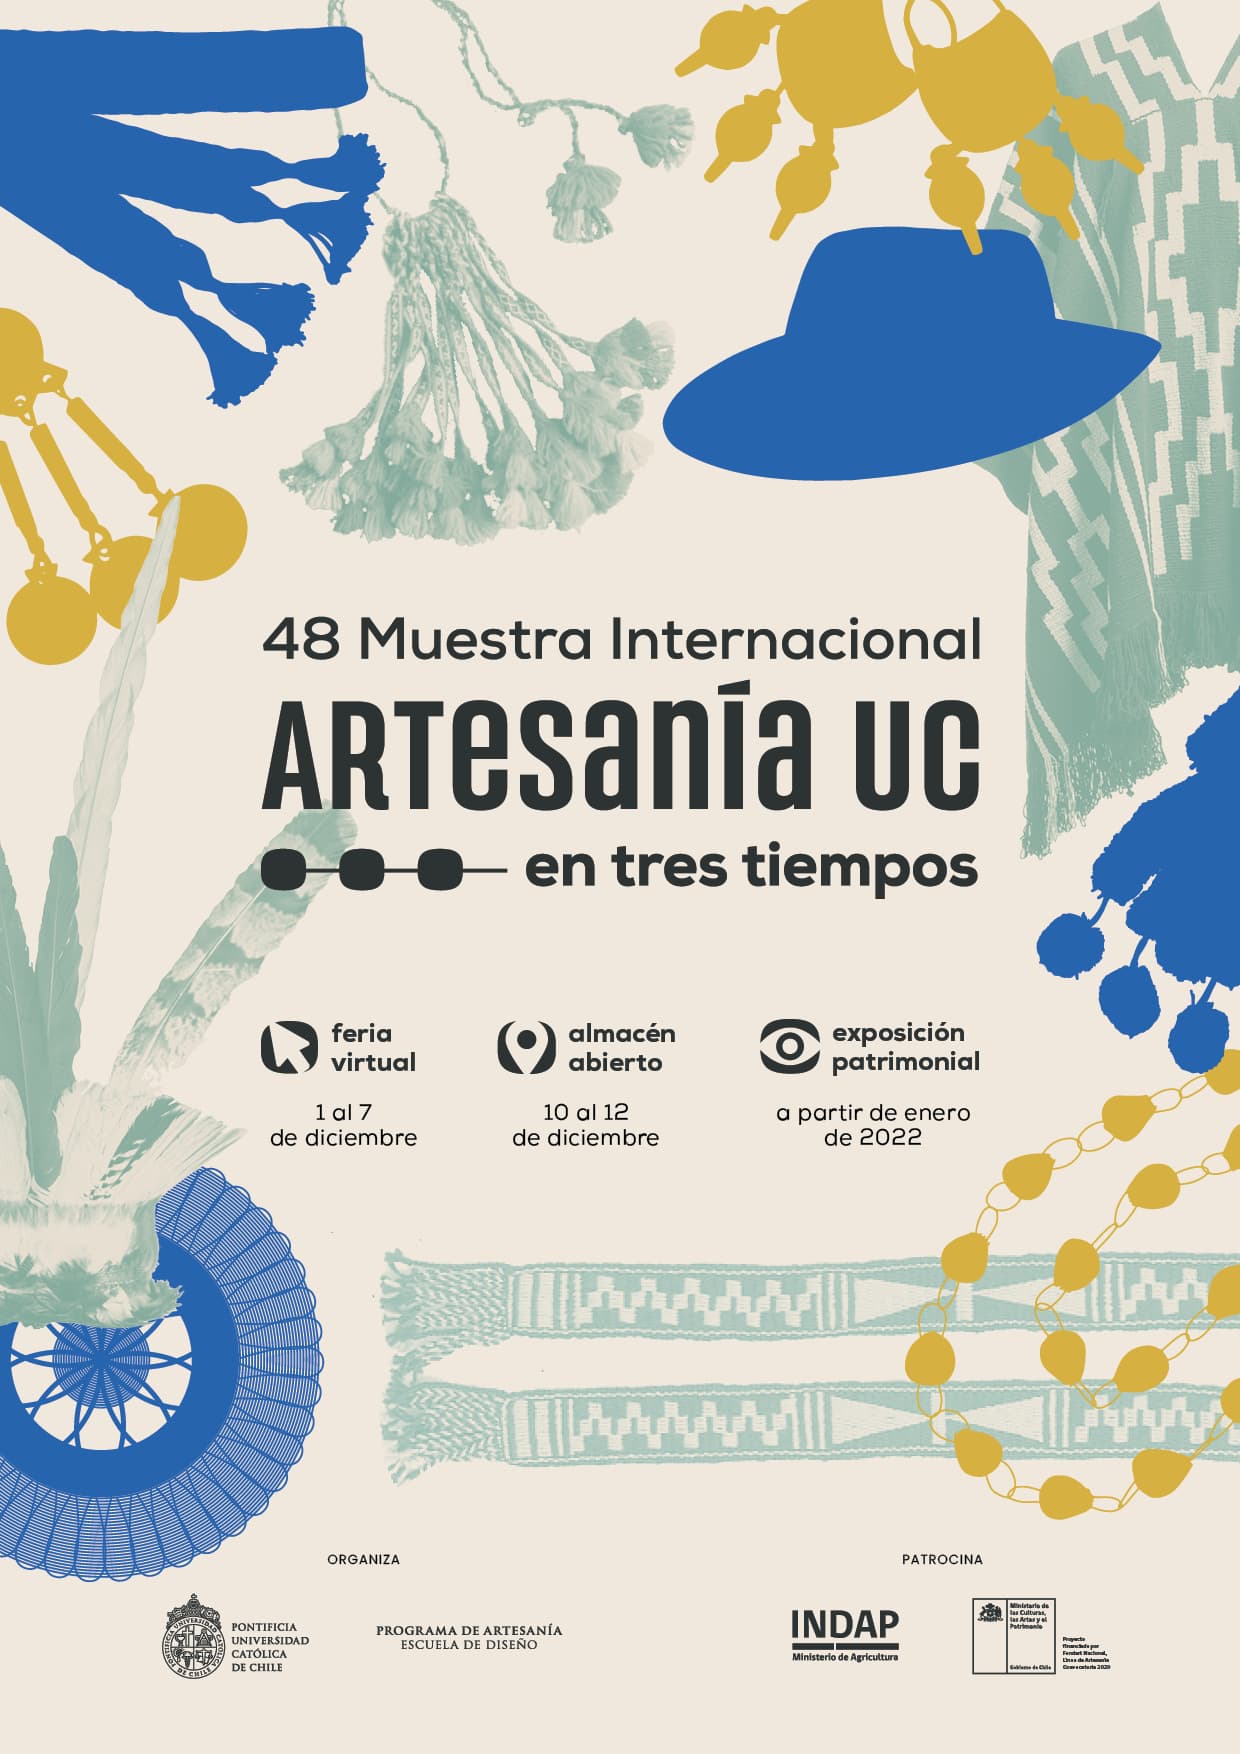 Afiche 48 Muestra de Artesania UC Archivo Artesania UC en tres tiempos 2021 1